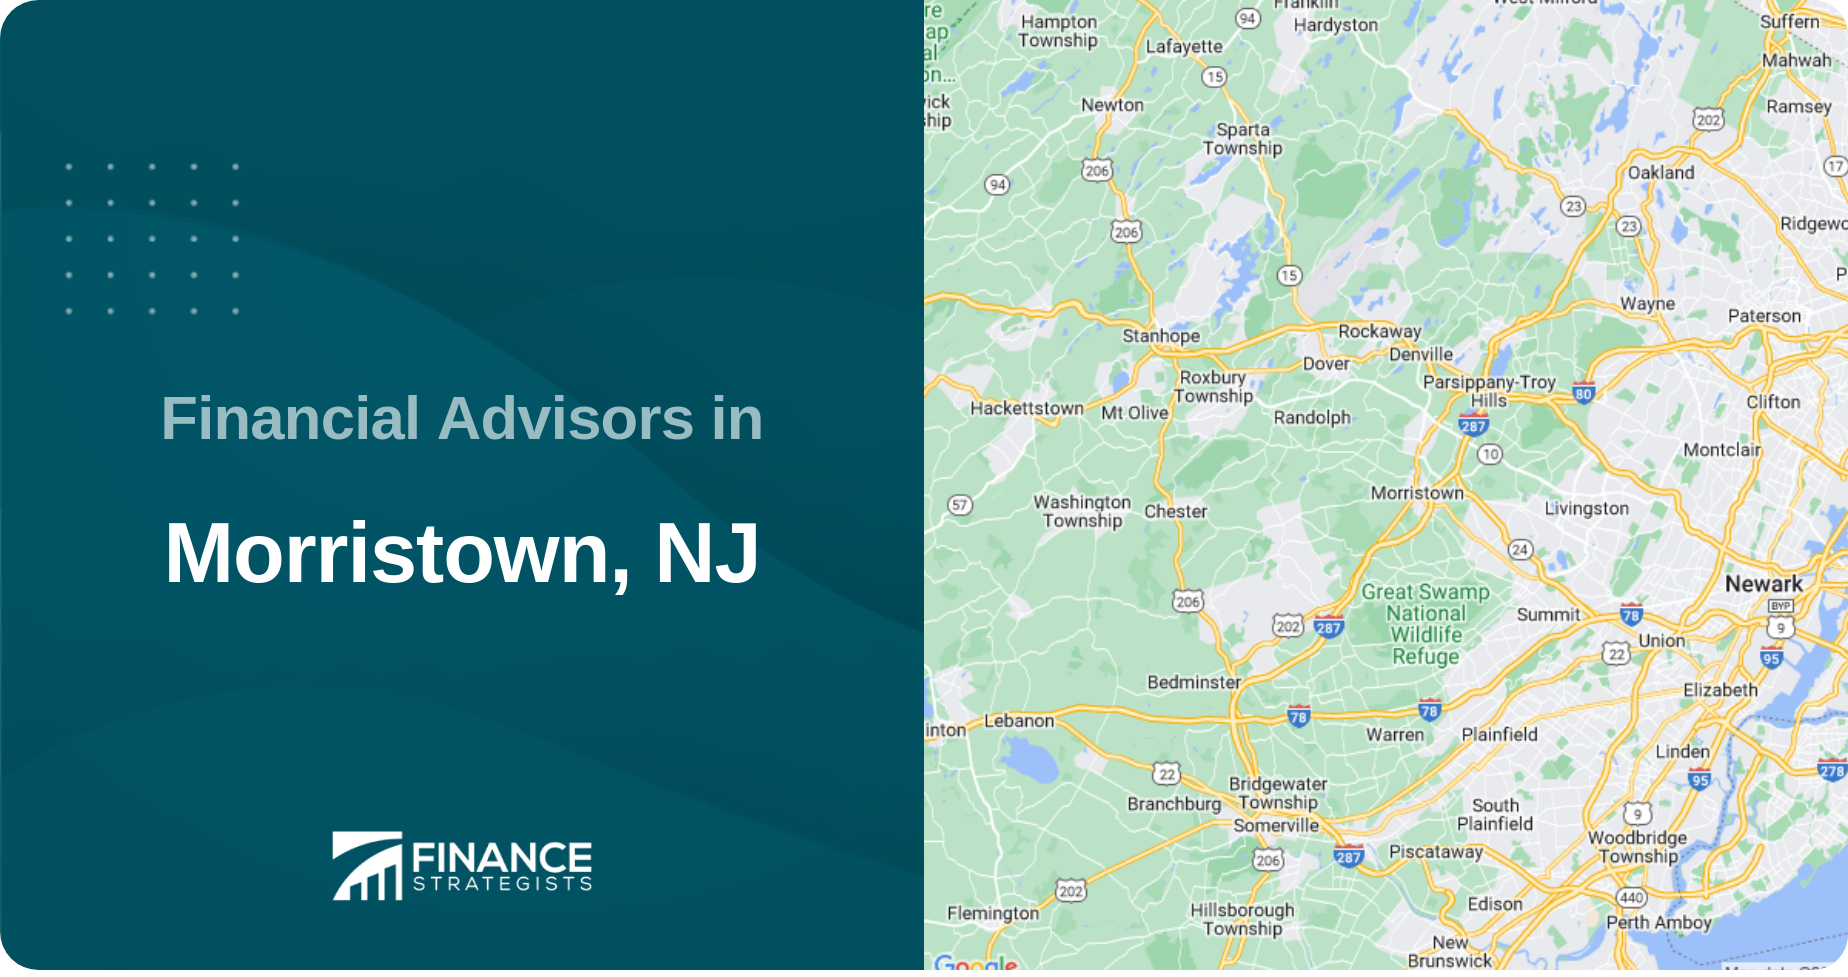 Financial Advisors in Morristown, NJ